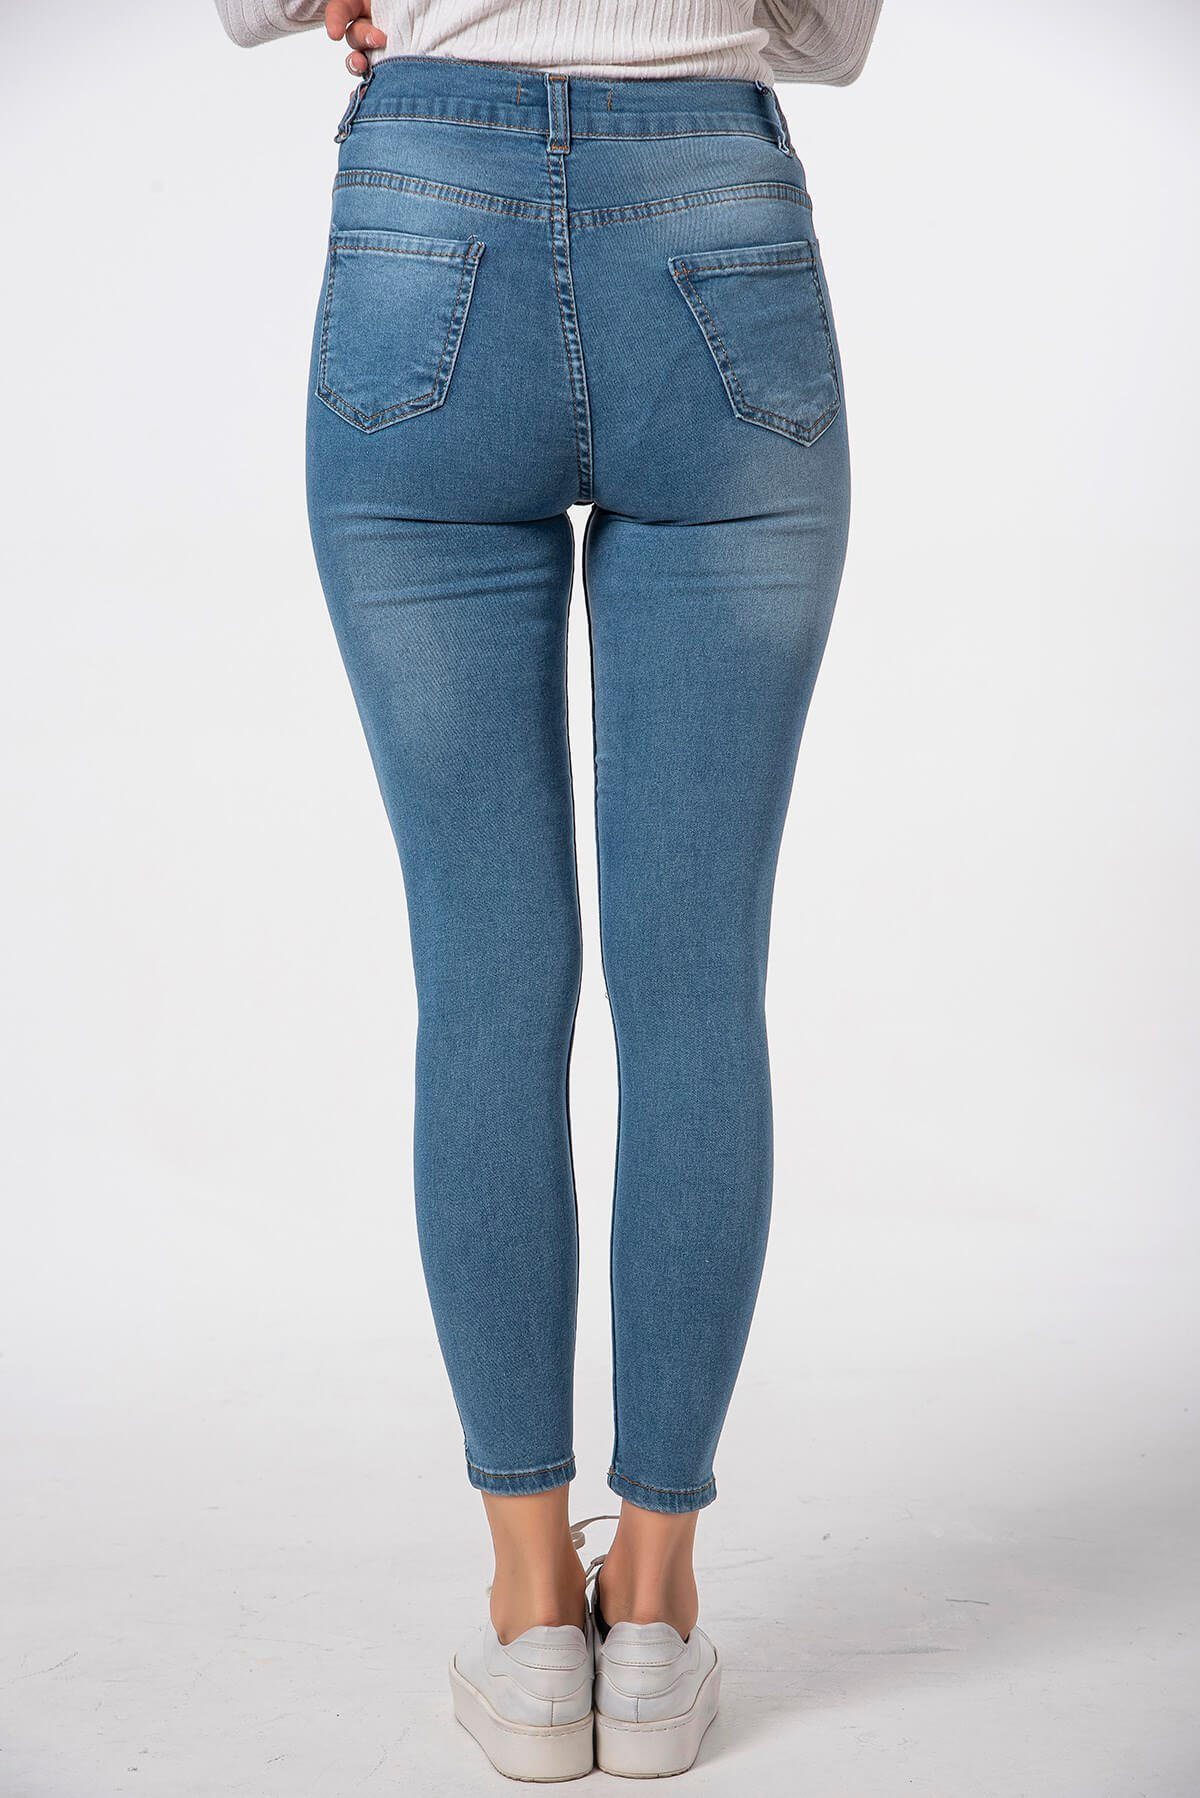 Modalisa Açık Mavi Dar Kesim Yırtık Model Kadın Kot Pantolon